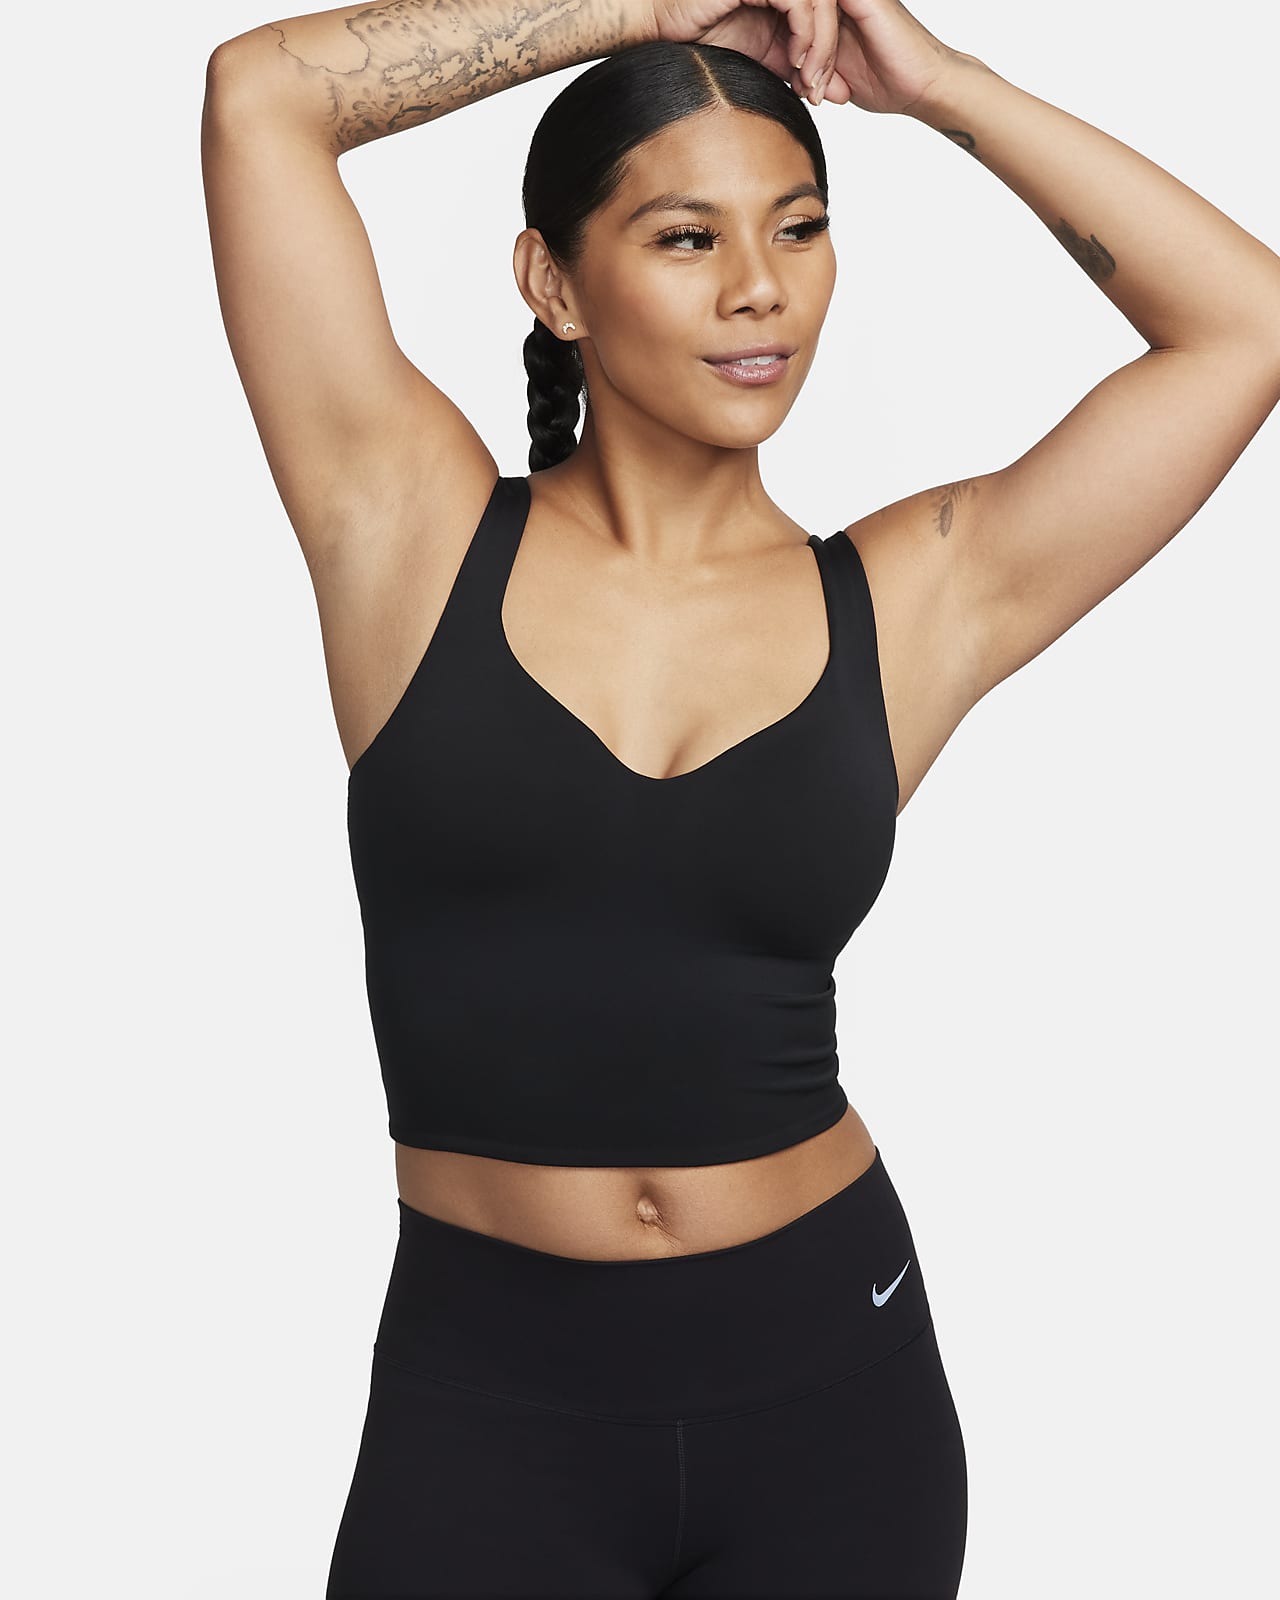 Damska koszulka sportowa bez rękawów z wbudowanym stanikiem z wyściełanymi miseczkami zapewniającym średnie wsparcie Nike Alate